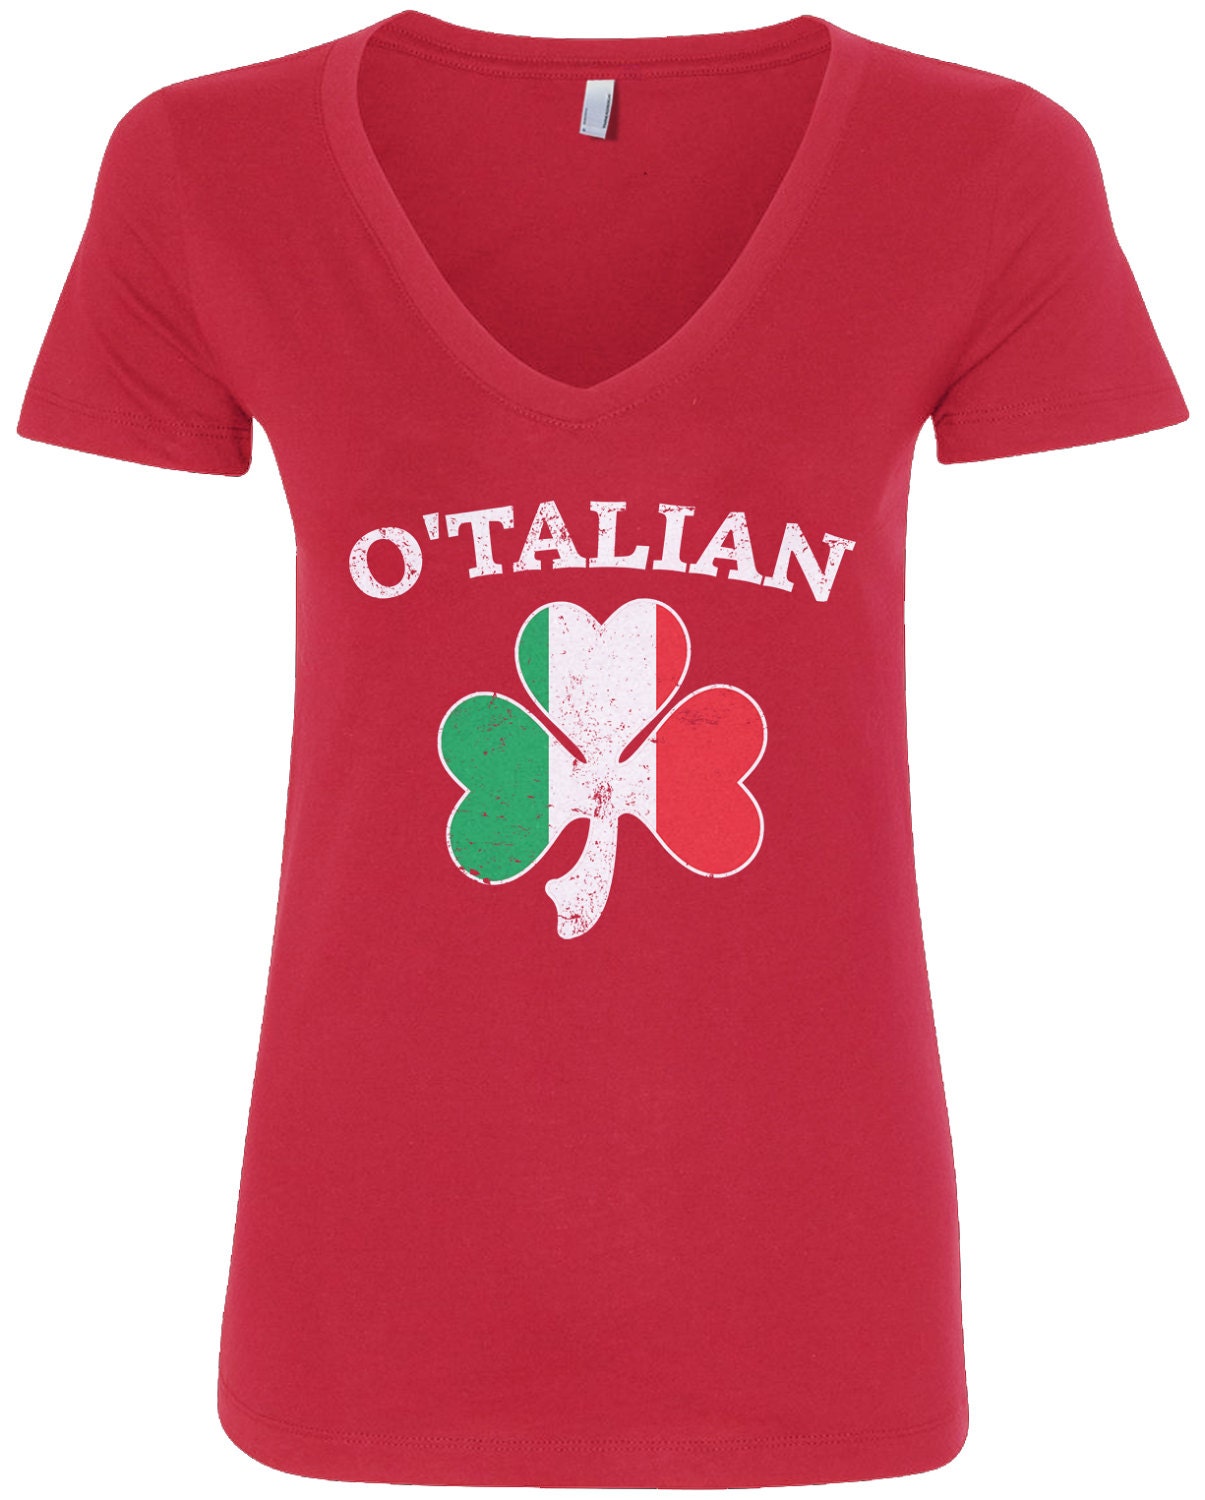 O'talian Italian Irish Shamrock Women's V-neck Fitted -  Hong Kong